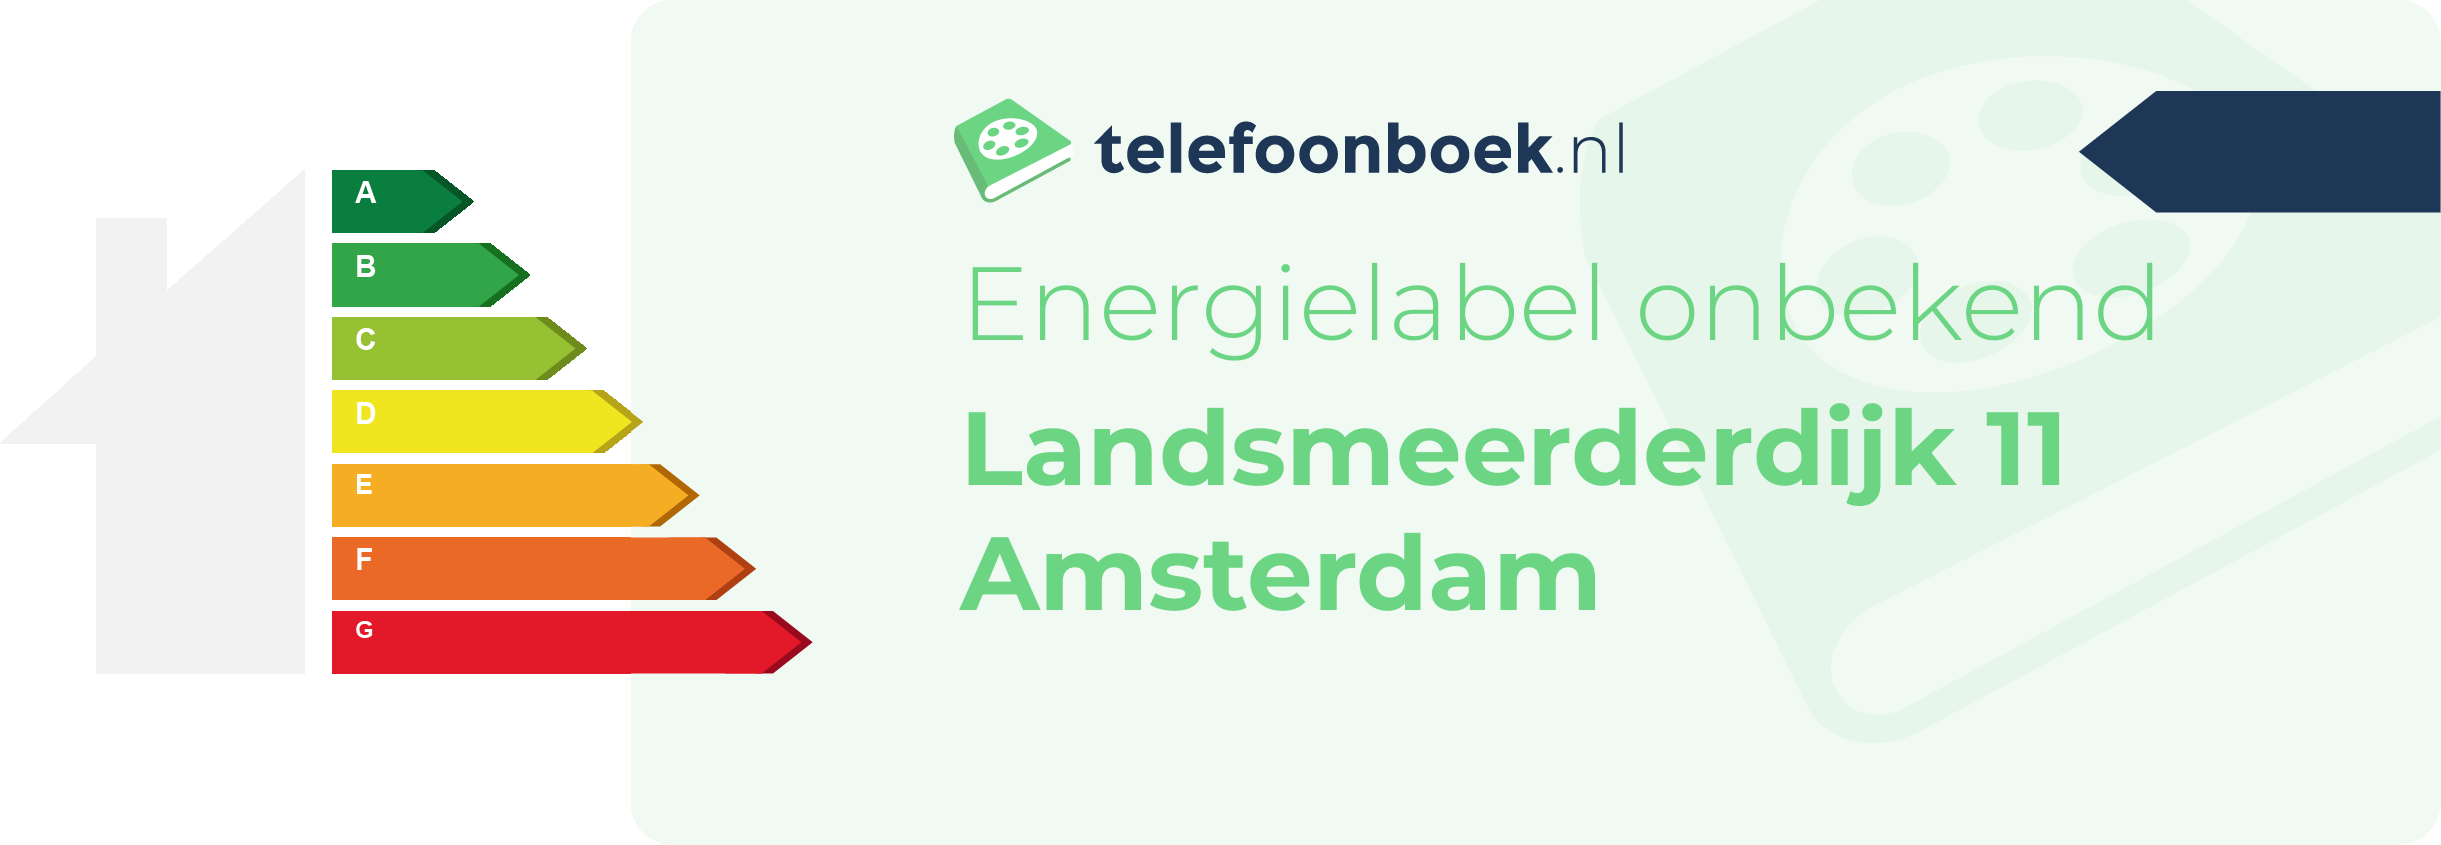 Energielabel Landsmeerderdijk 11 Amsterdam